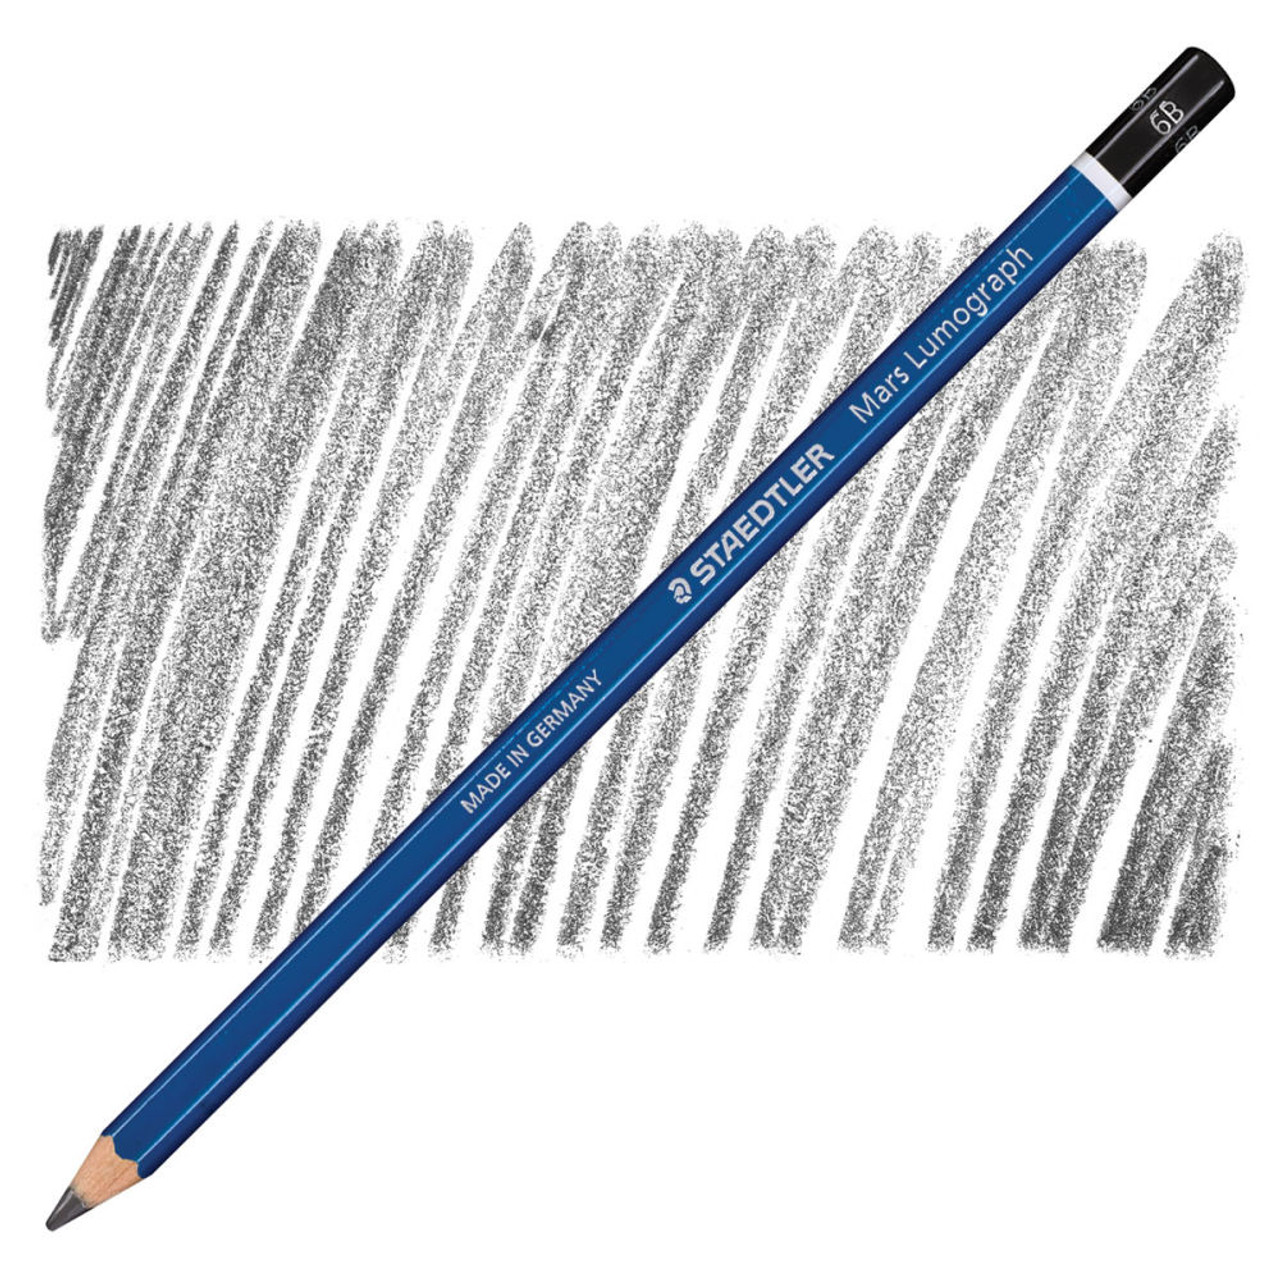 6B Lumograph Drawing and Sketching Pencil